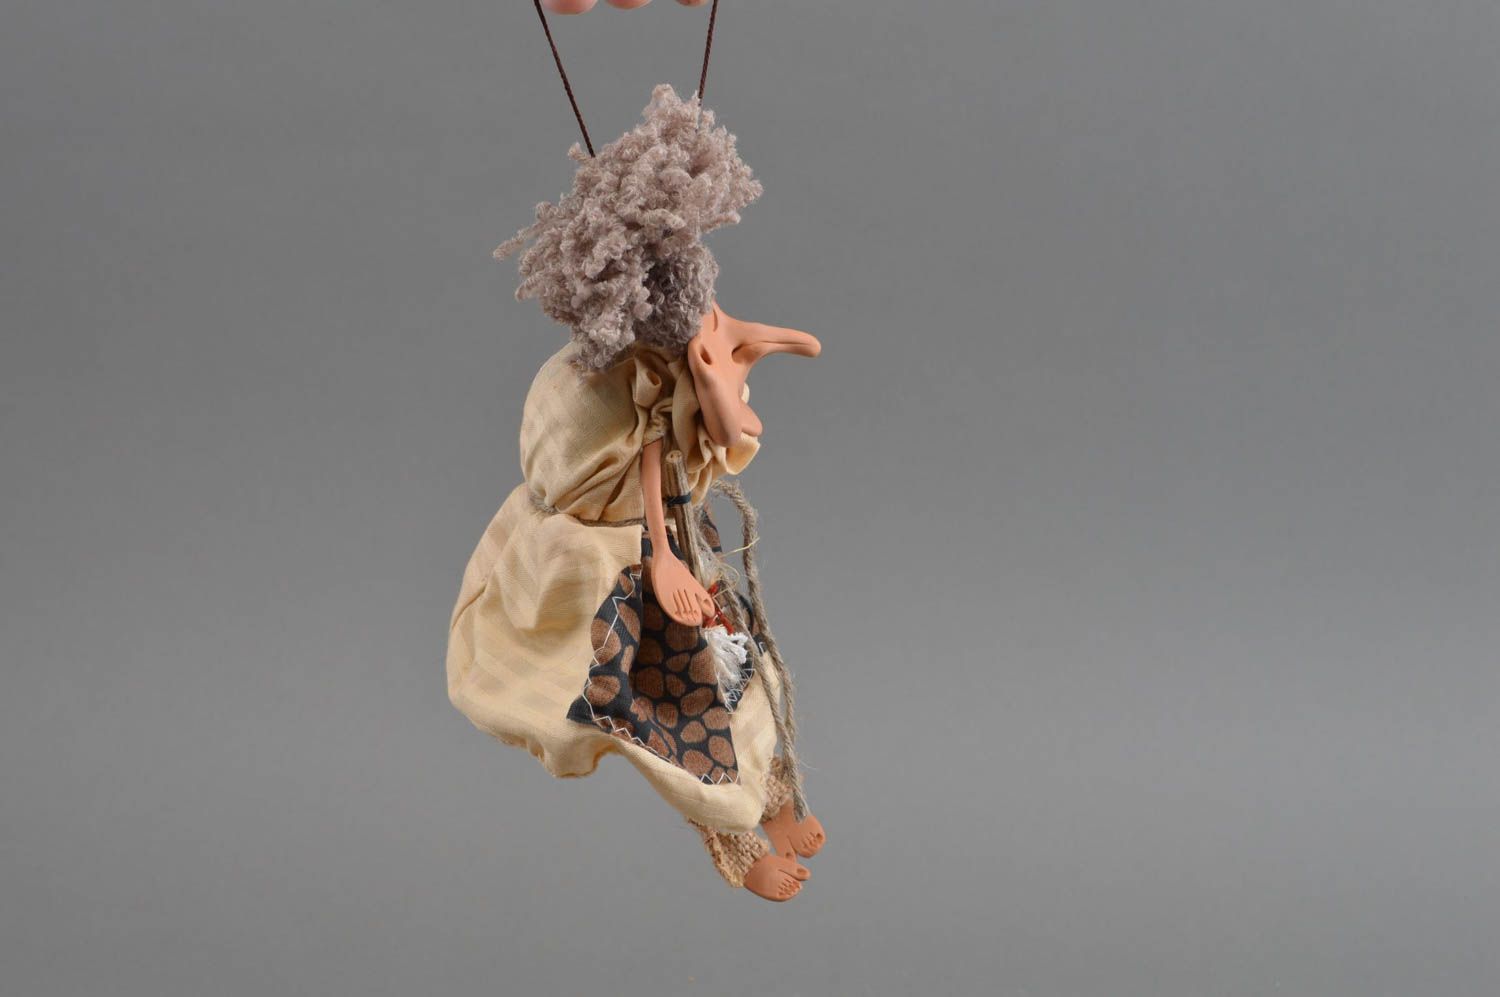 Авторская интерьерная подвеска игрушка из глины и ткани ручной работы Миледи  фото 2